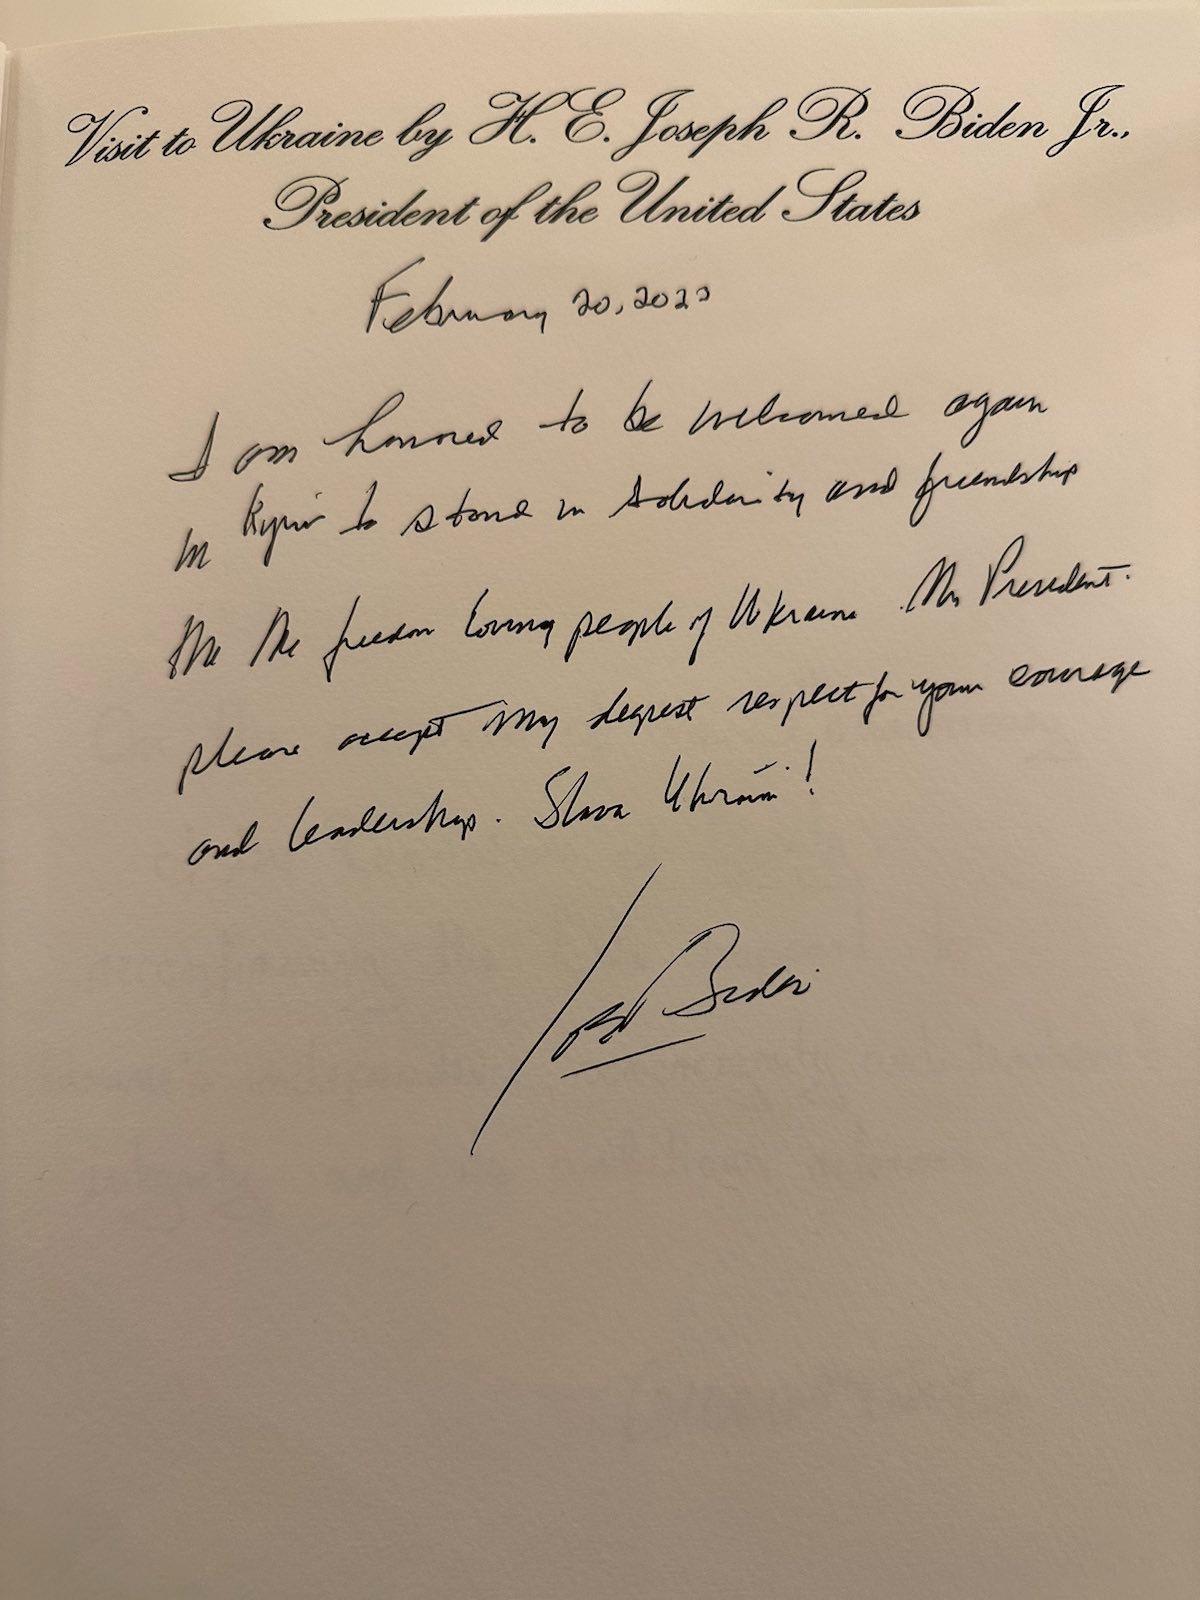 Biden a laissé un message dans le livre d'or du palais Mariinsky (photo) photo 1